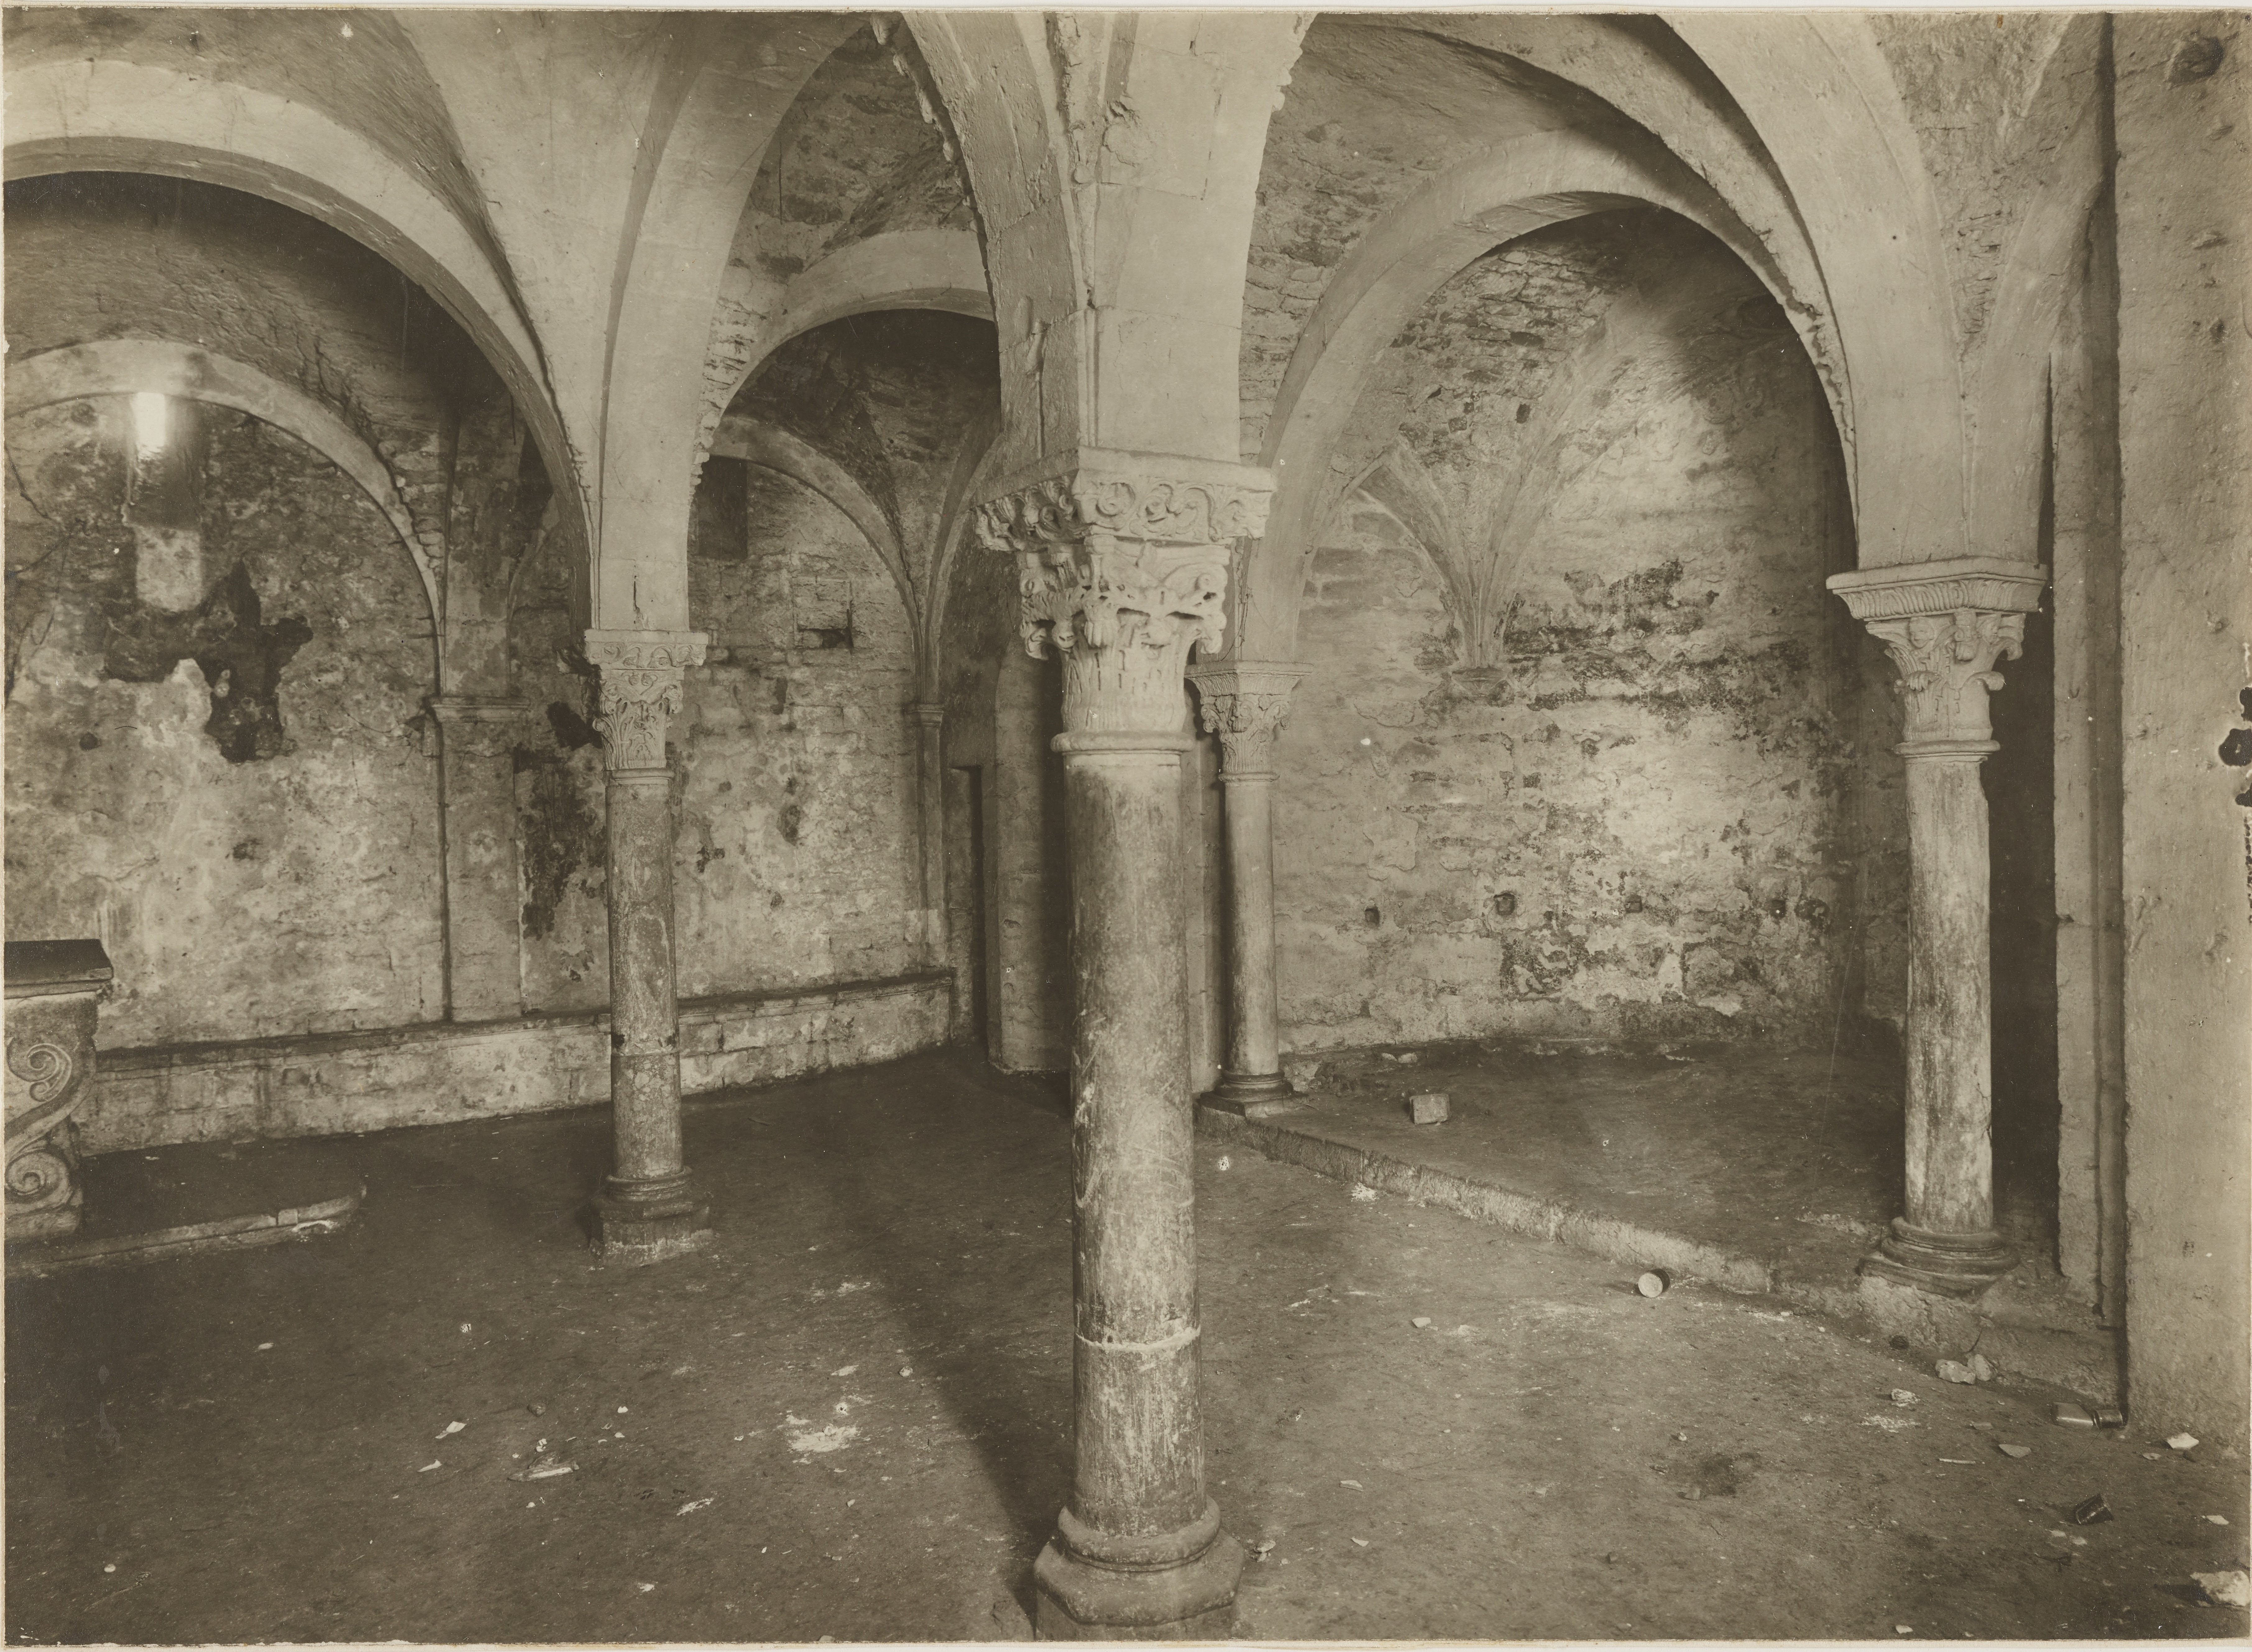 Fotografo non identificato, Brindisi - Chiesa di S. Lucia, cripta, cripta basiliana - scorcio dell'interno, 1901-1925, gelatina ai sali d'argento, MPI141588